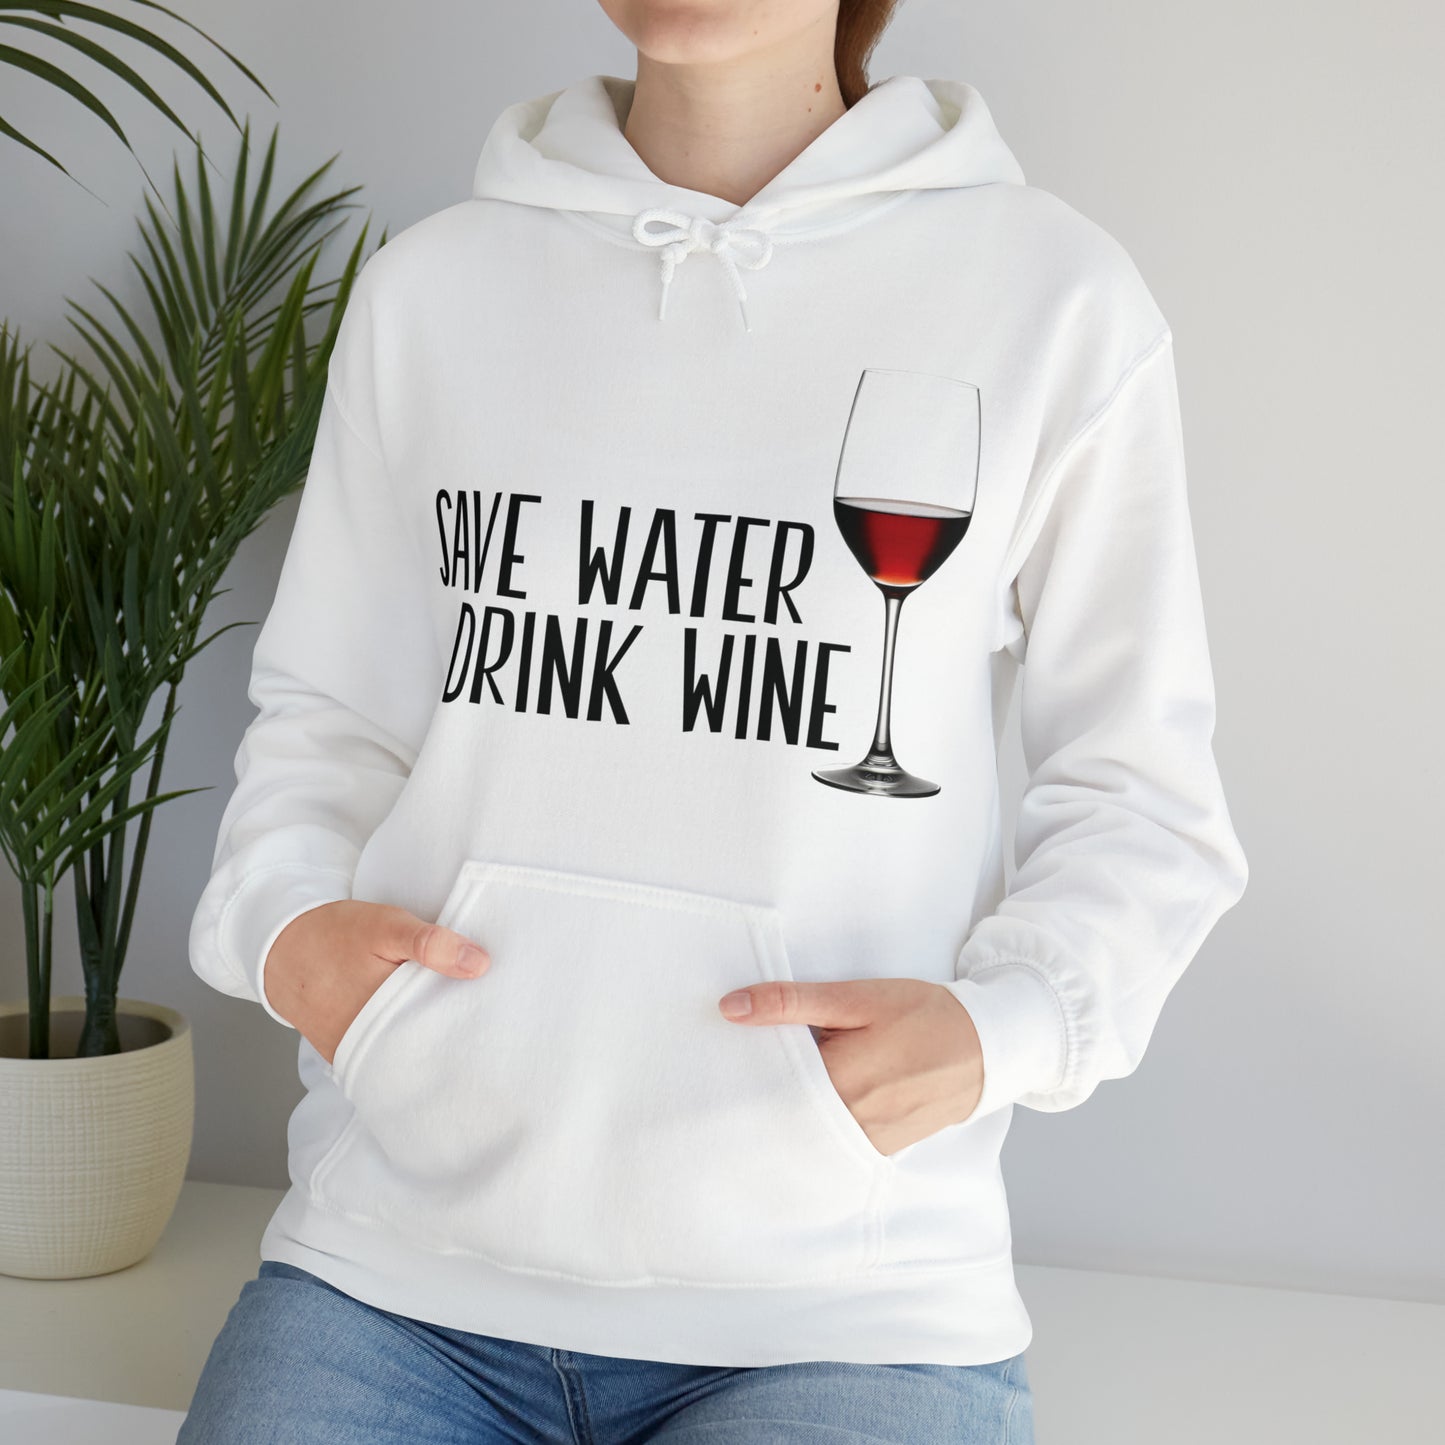 Save Water Drink Wine Hooded Sweatshirt